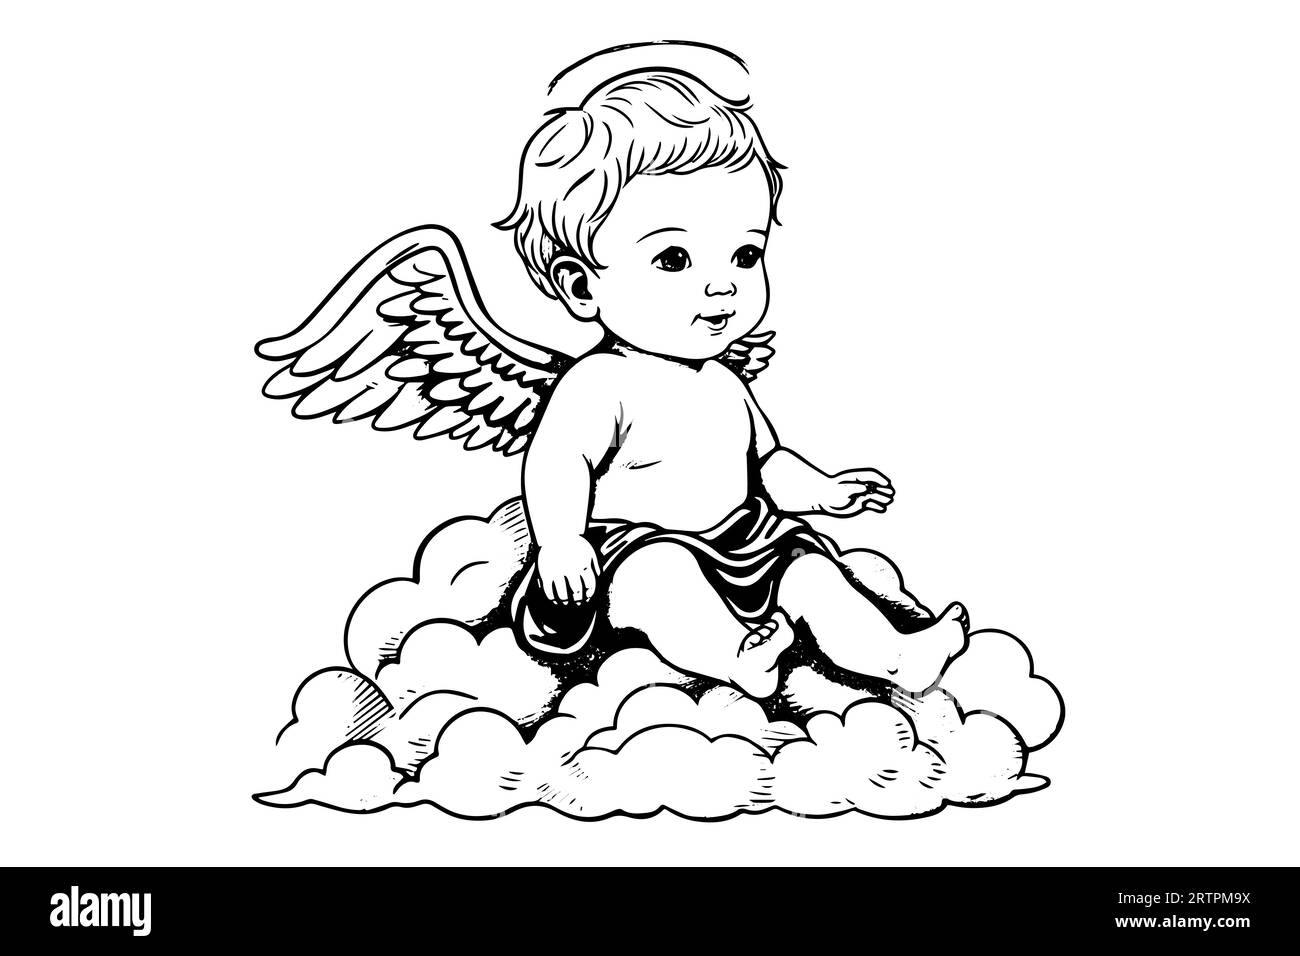 Croquis de gravure dessiné à la main d'un mignon petit ange assis sur un nuage. Illustration vectorielle. Illustration de Vecteur